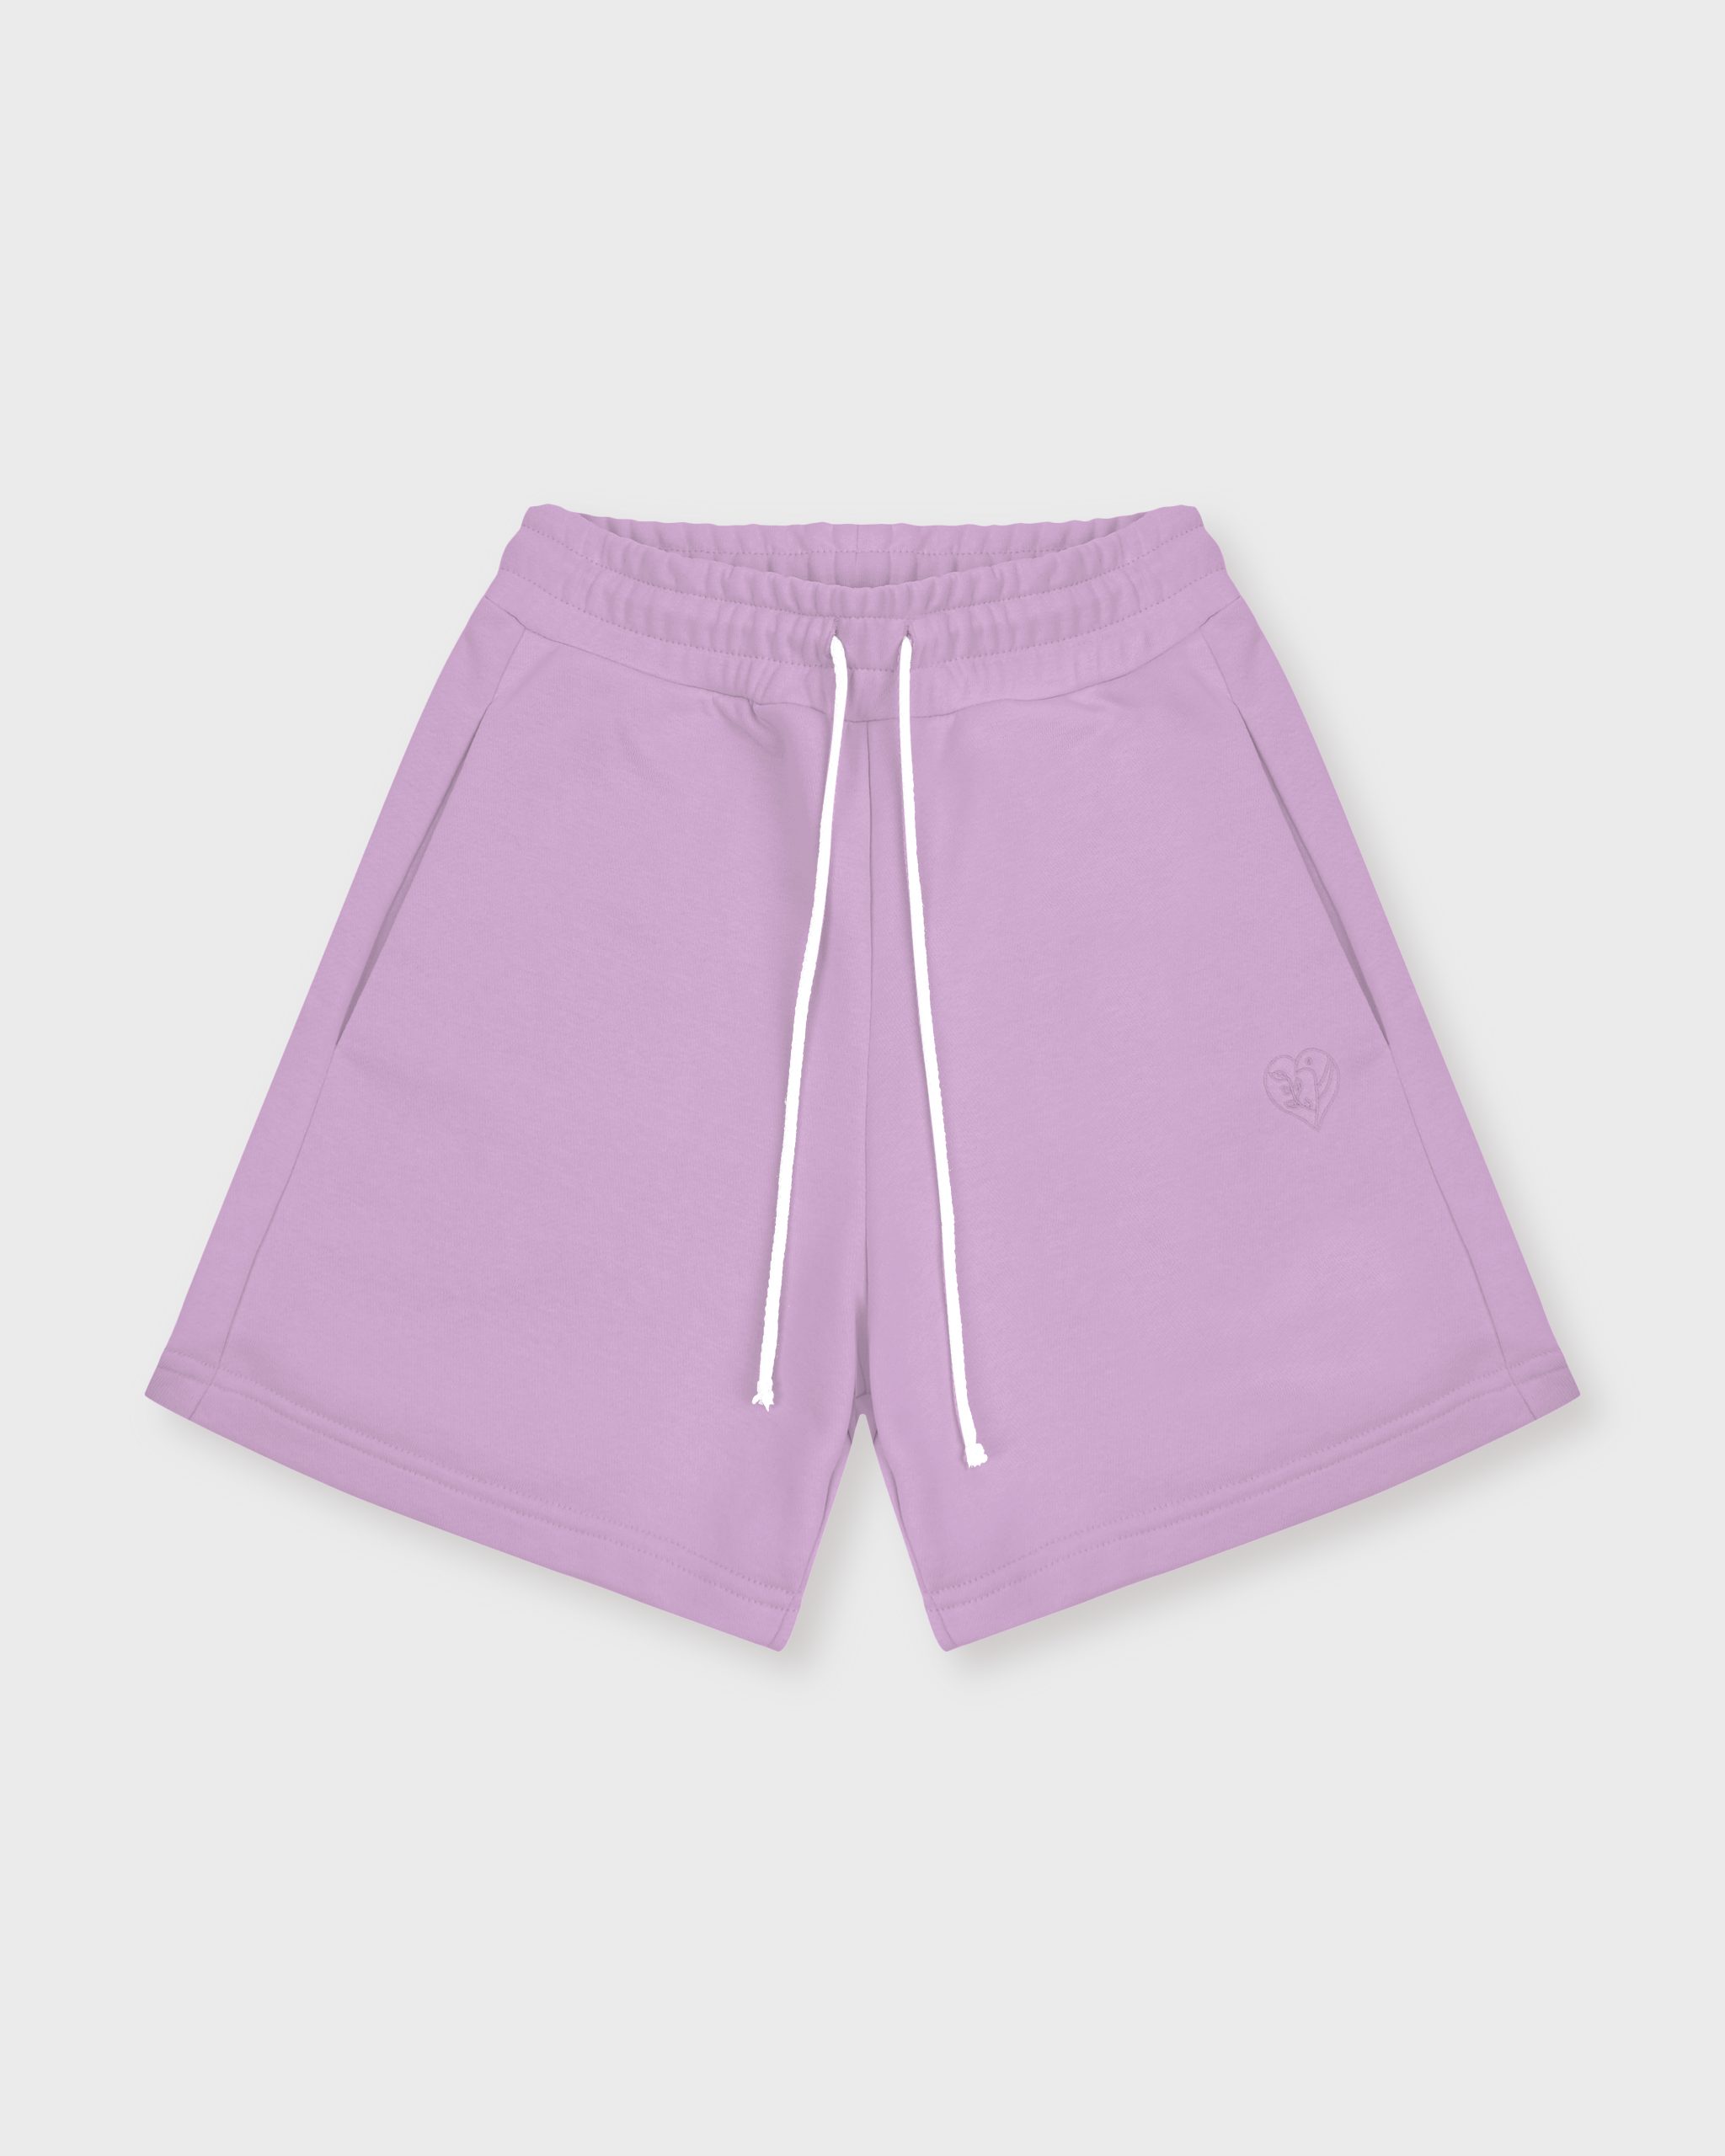 Повседневные шорты женские Atmosphere Summer vibes фиолетовые L